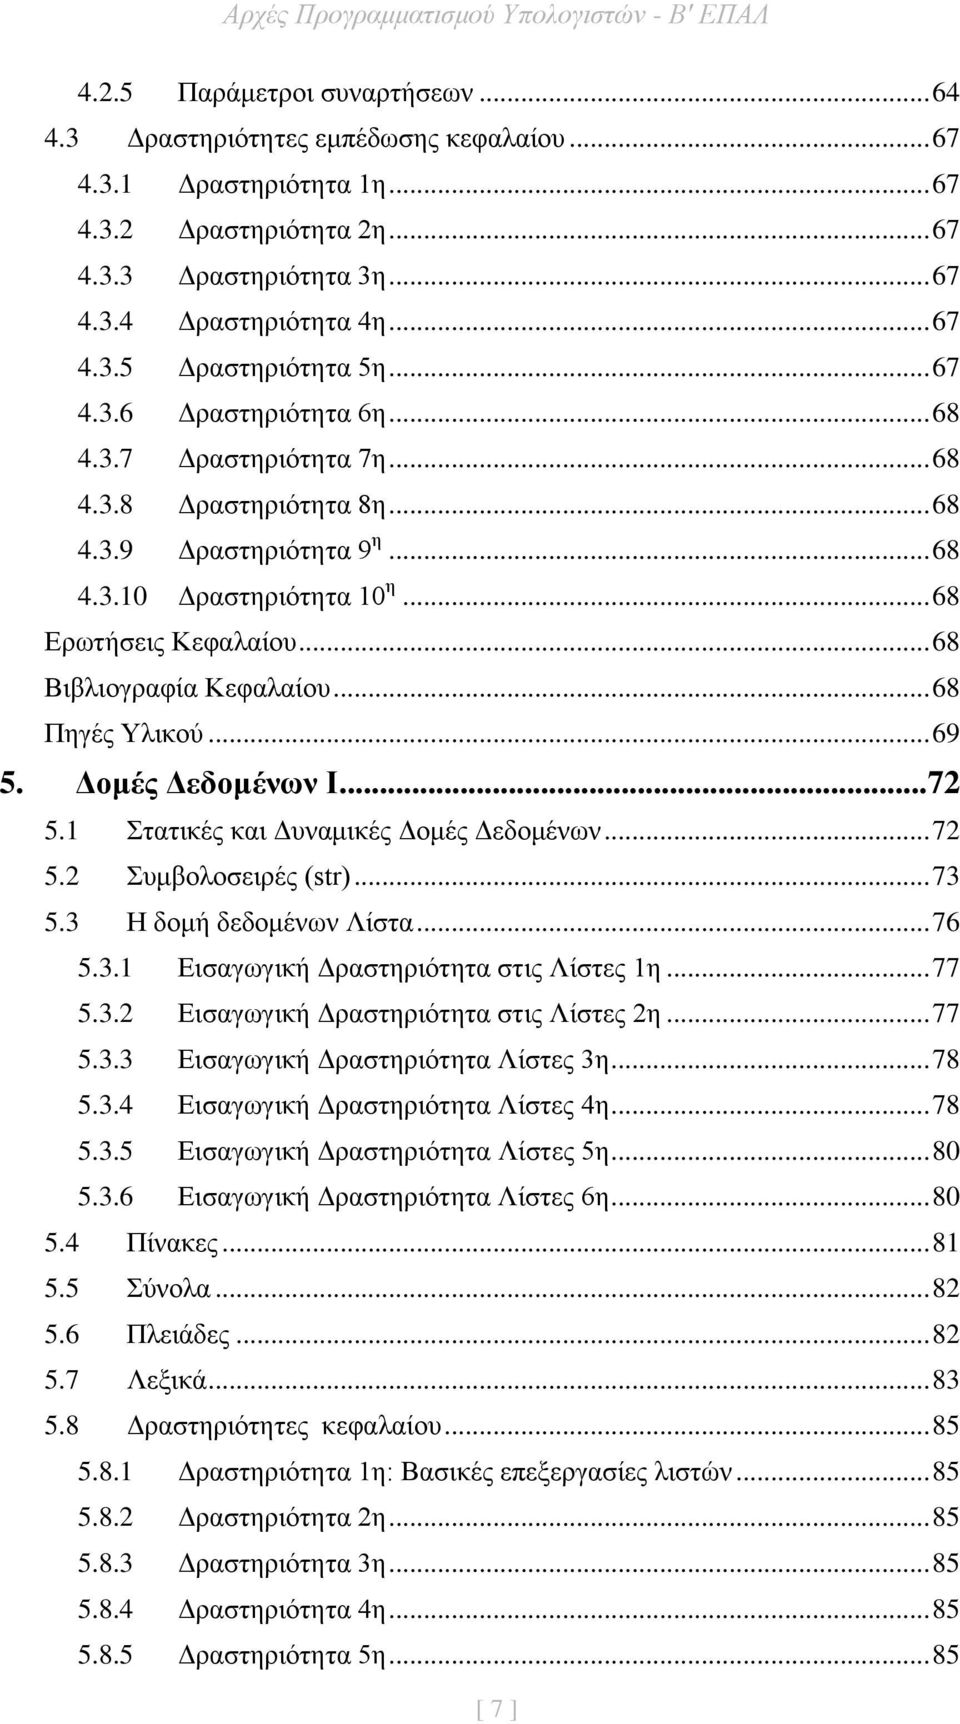 .. 68 Βιβλιογραφία Κεφαλαίου... 68 Πηγές Υλικού... 69 5. Δομές Δεδομένων Ι... 72 5.1 Στατικές και Δυναμικές Δομές Δεδομένων... 72 5.2 Συμβολοσειρές (str)... 73 